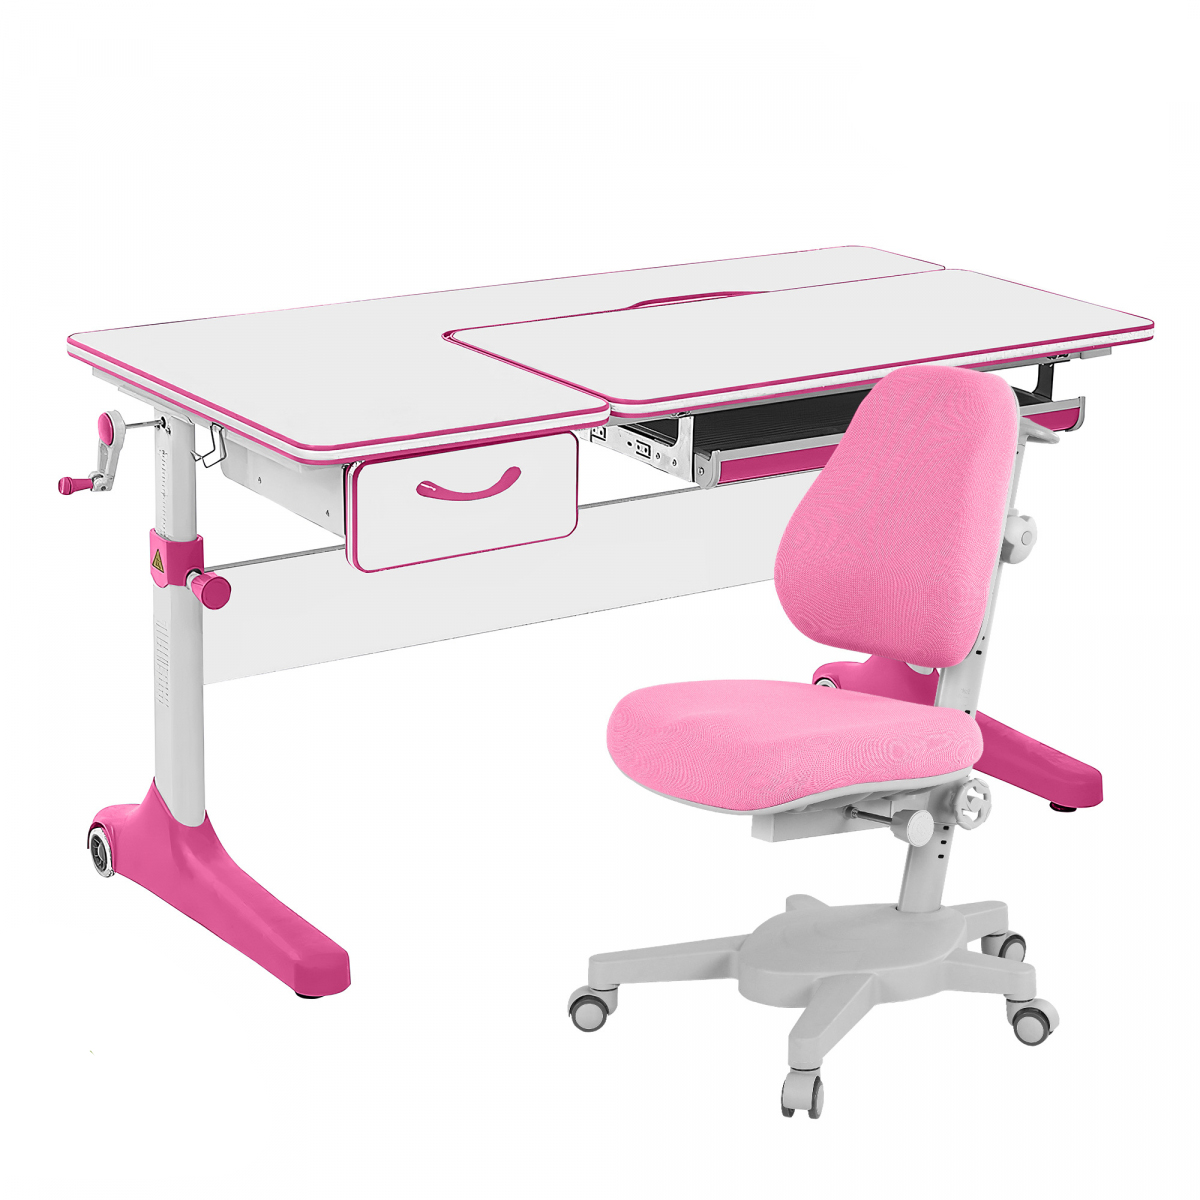 Комплект парта Anatomica Uniqa Lite белый/розовый с розовым креслом Armata комплект kinderzen парта dali plus с креслом armata